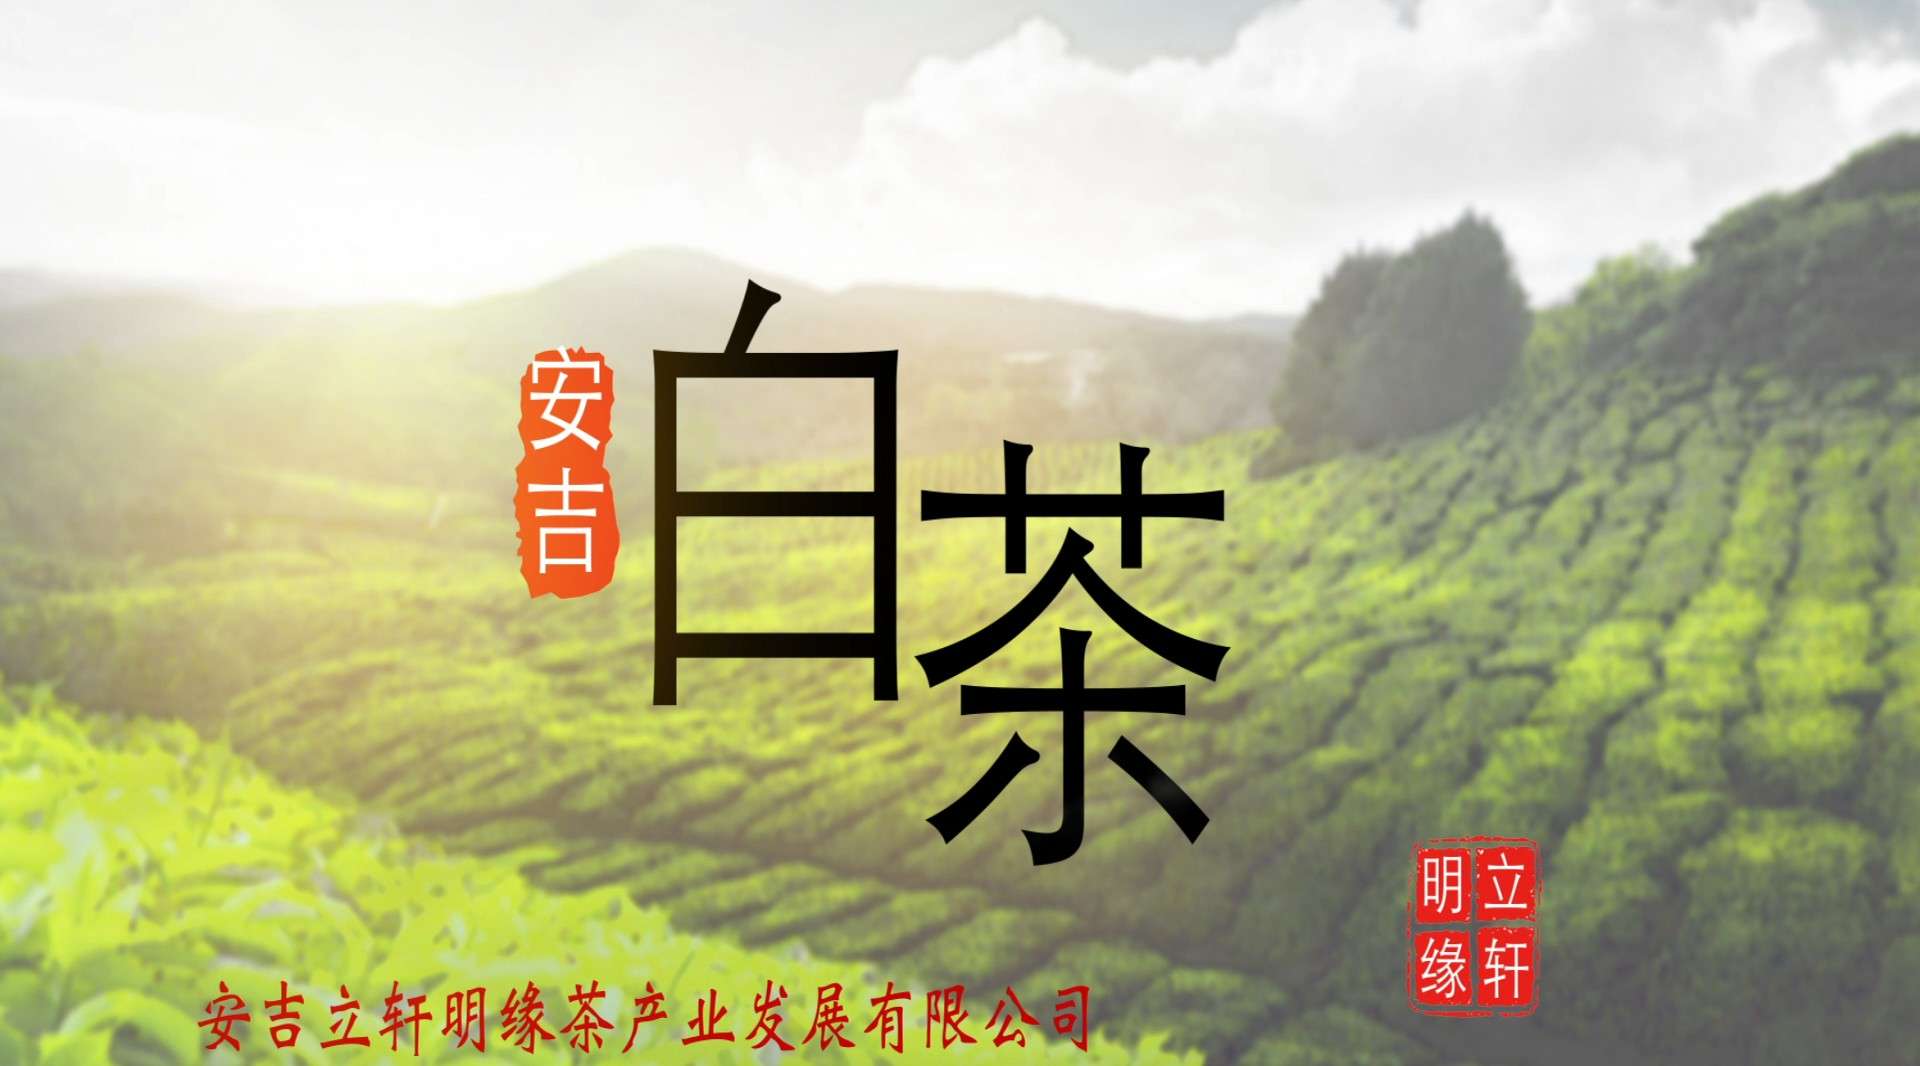 一片叶子—安吉立轩明缘茶产业有限公司